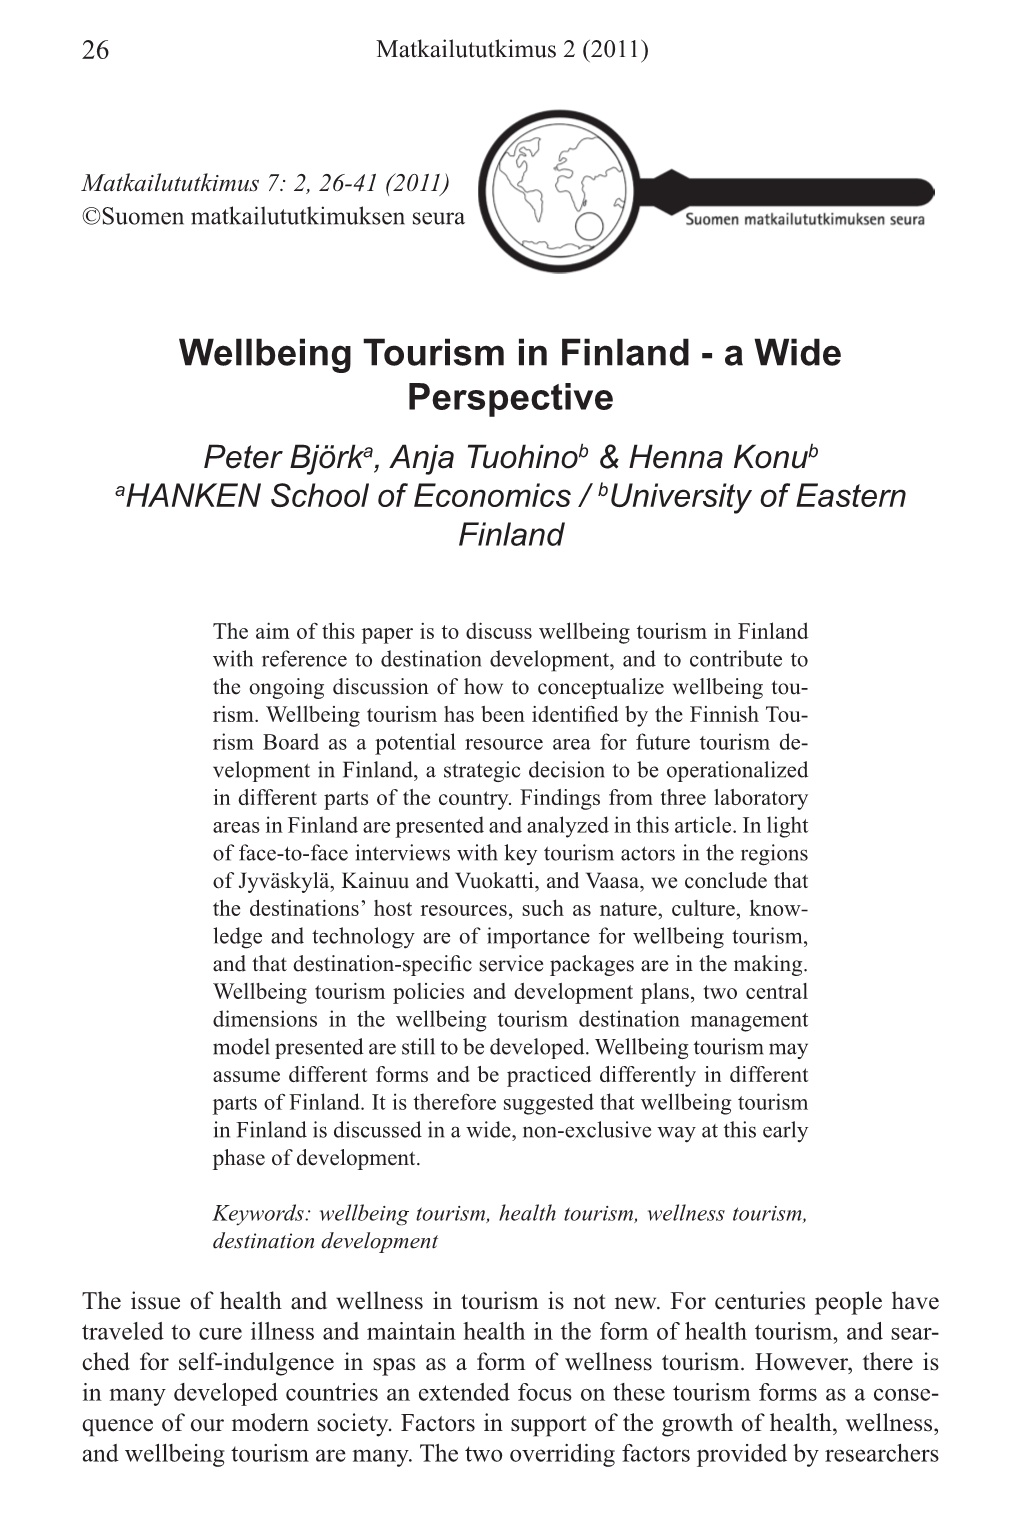 Wellbeing Tourism in Finland - a Wide Perspective Peter Björka, Anja Tuohinob & Henna Konub Ahanken School of Economics / Buniversity of Eastern Finland